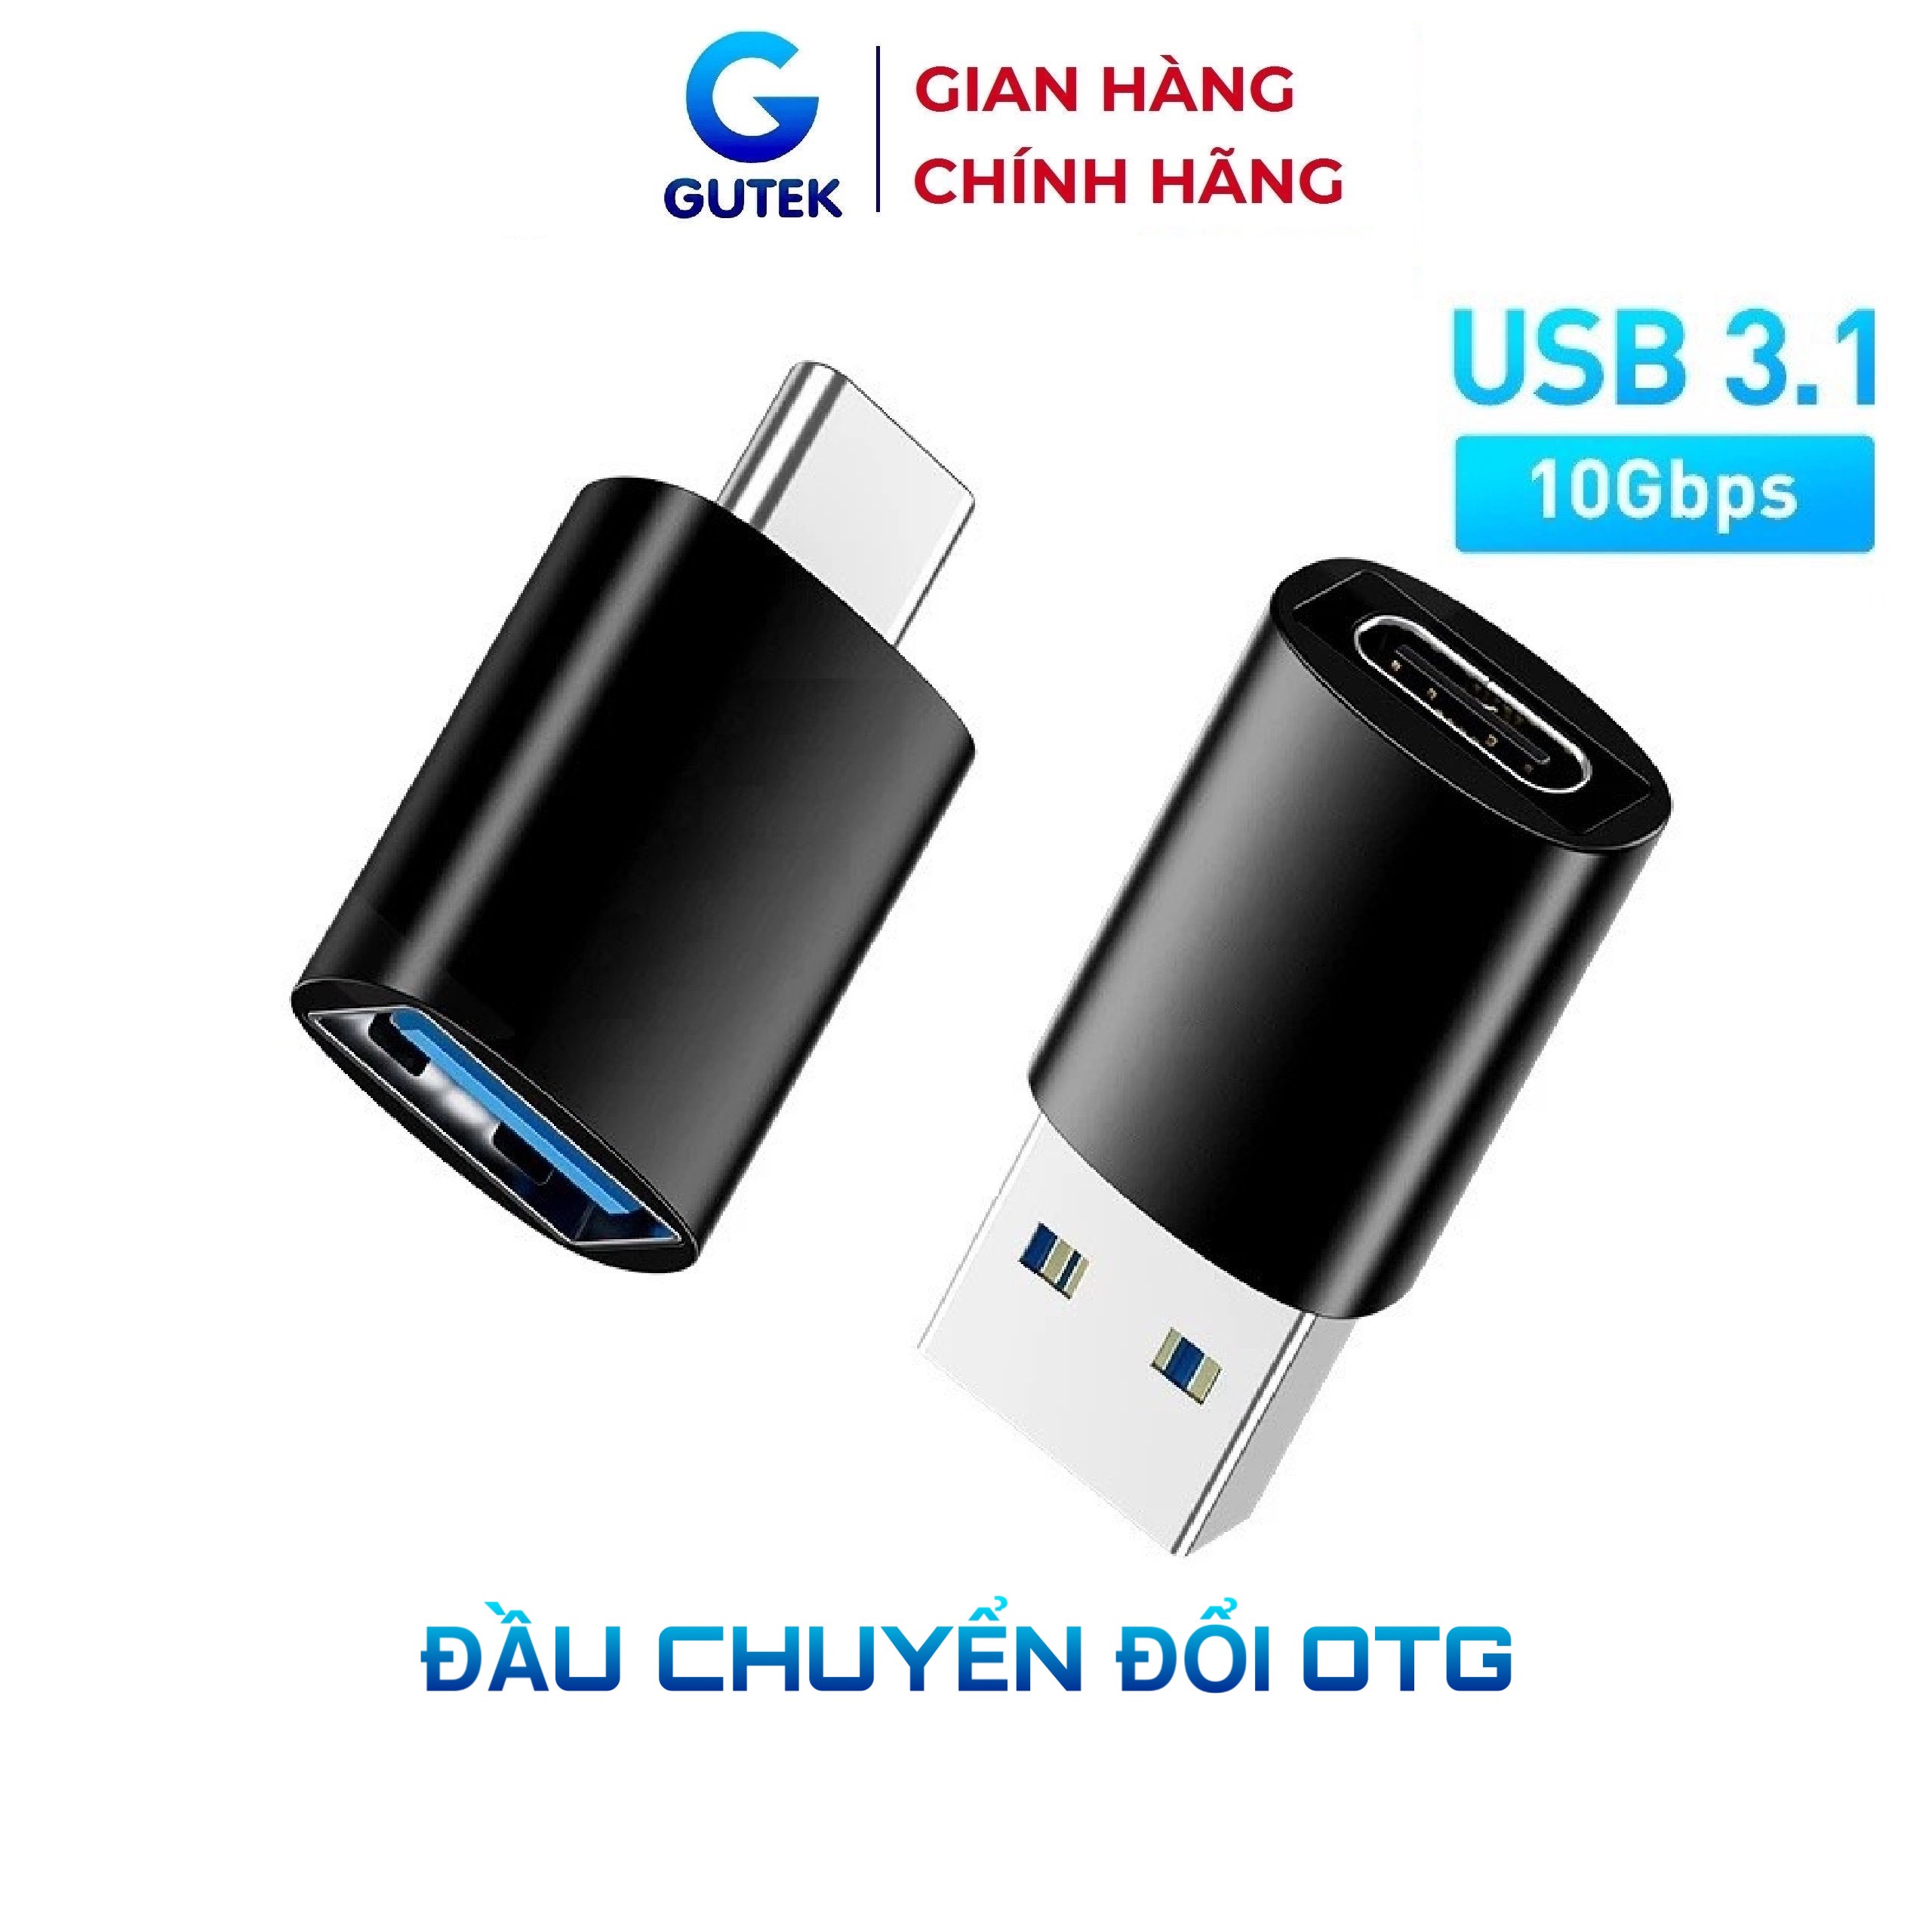 Đầu chuyển đổi GUTEK USB 3.1 Type C sang USB cao cấp thích hợp cho Macbook